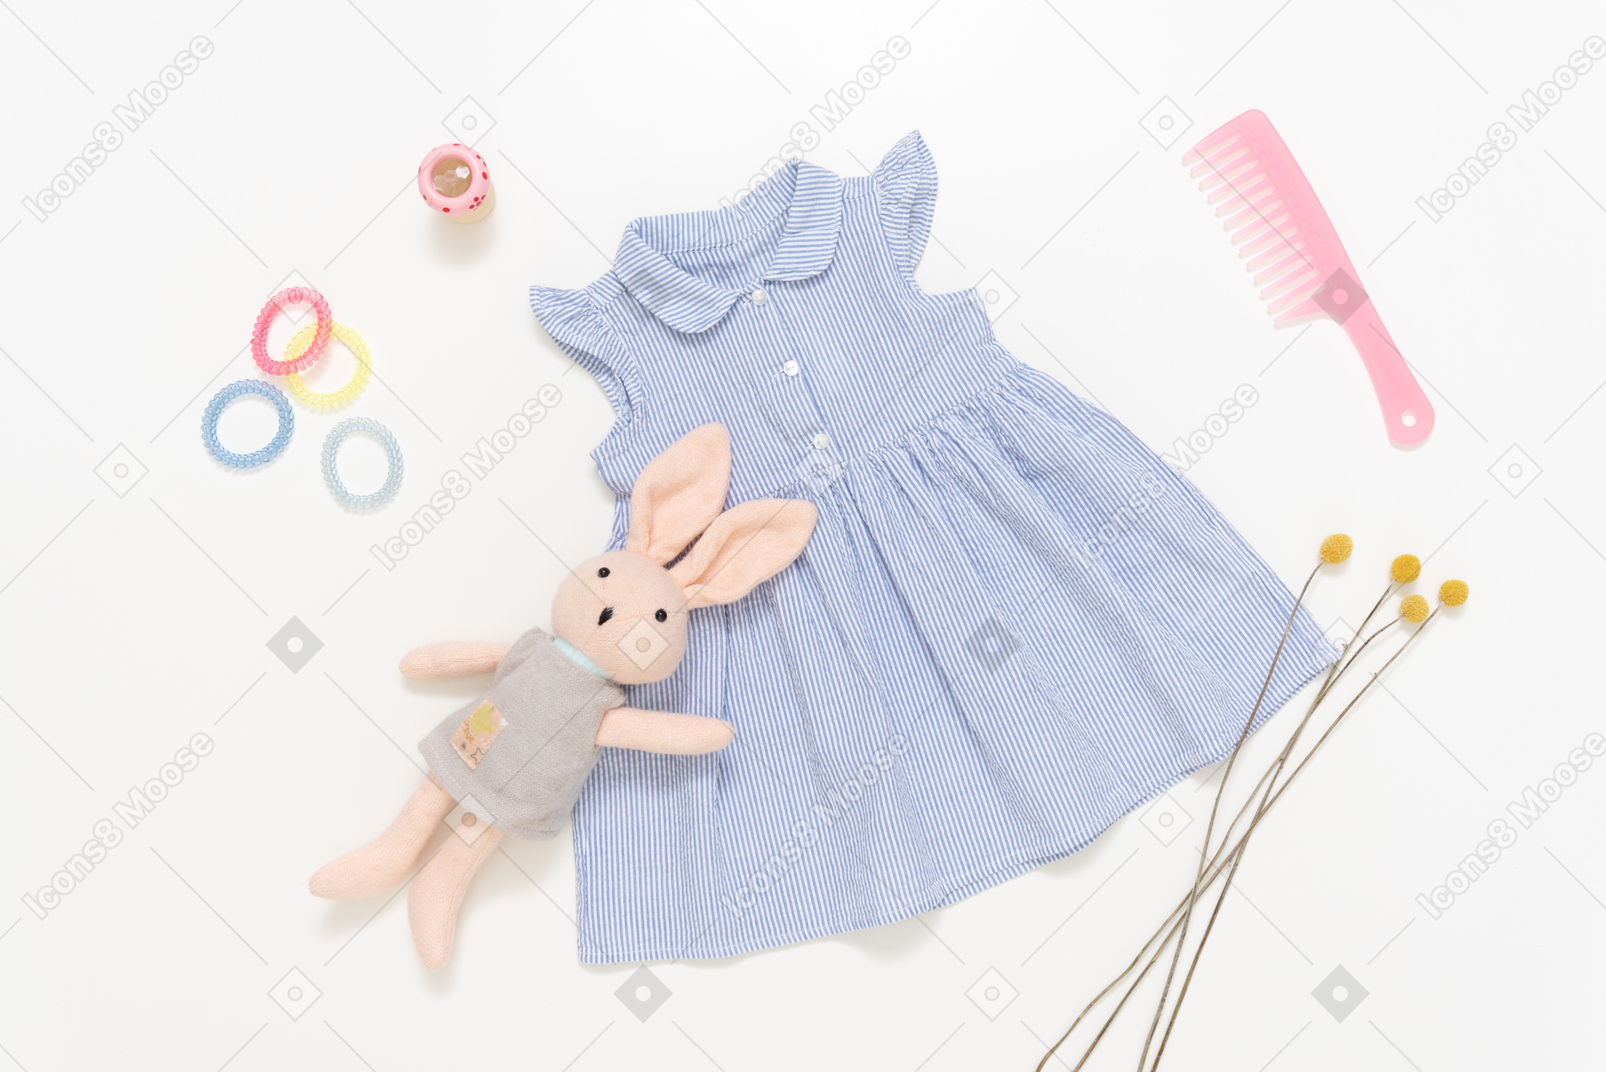 Vestido azul da menina criança, bicho de pelúcia, escova de cabelo de plástico rosa e acessórios